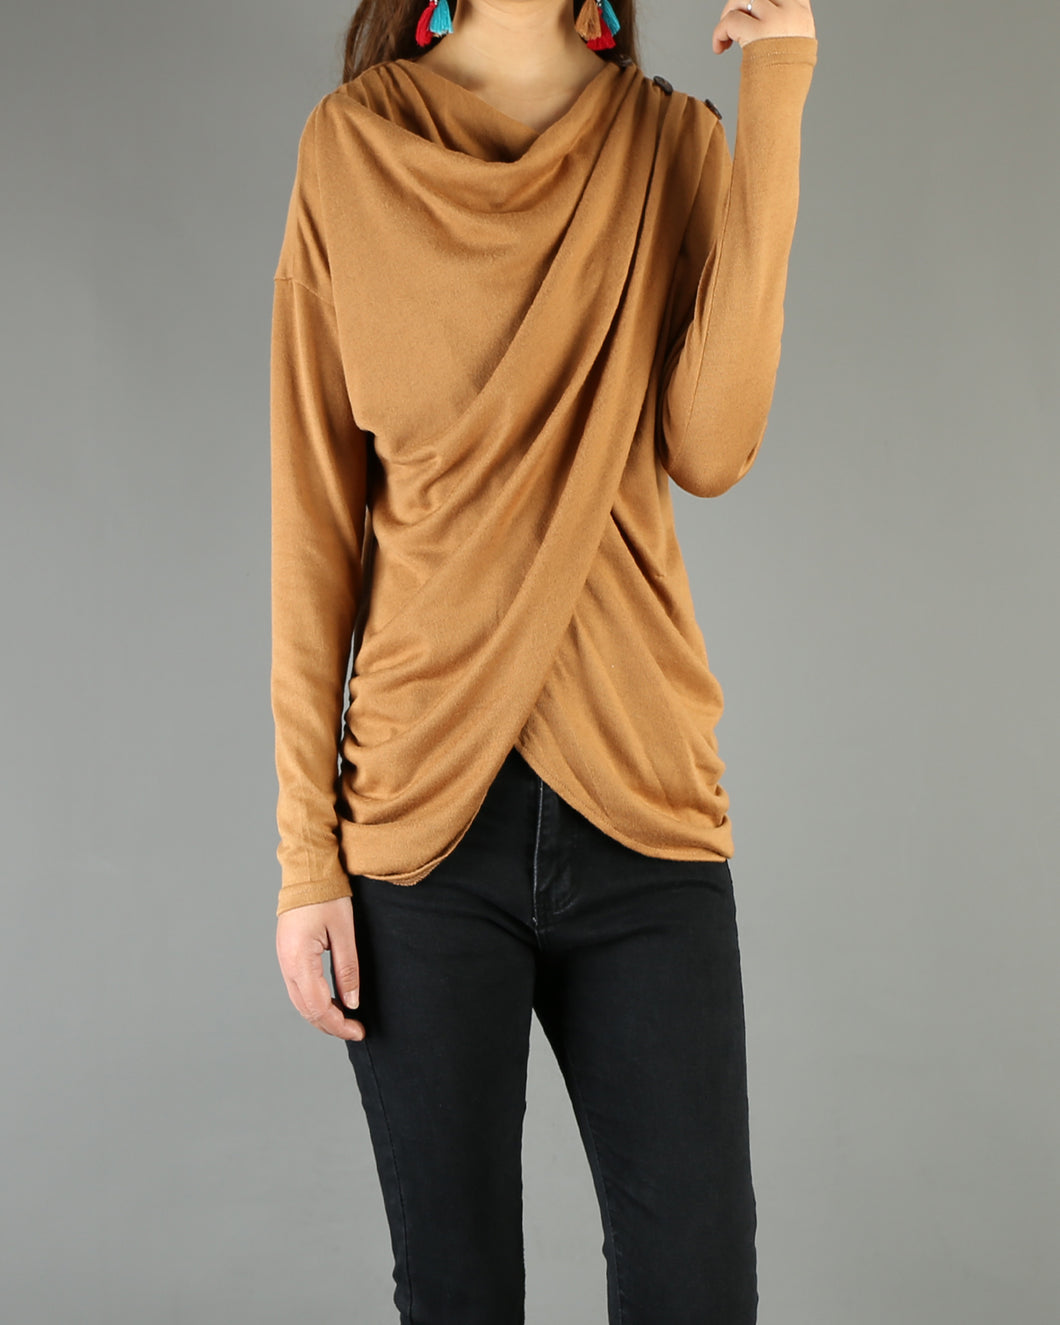 Women's cotton top/long sleeve top/extravagant top(Y1901) - lijingshop